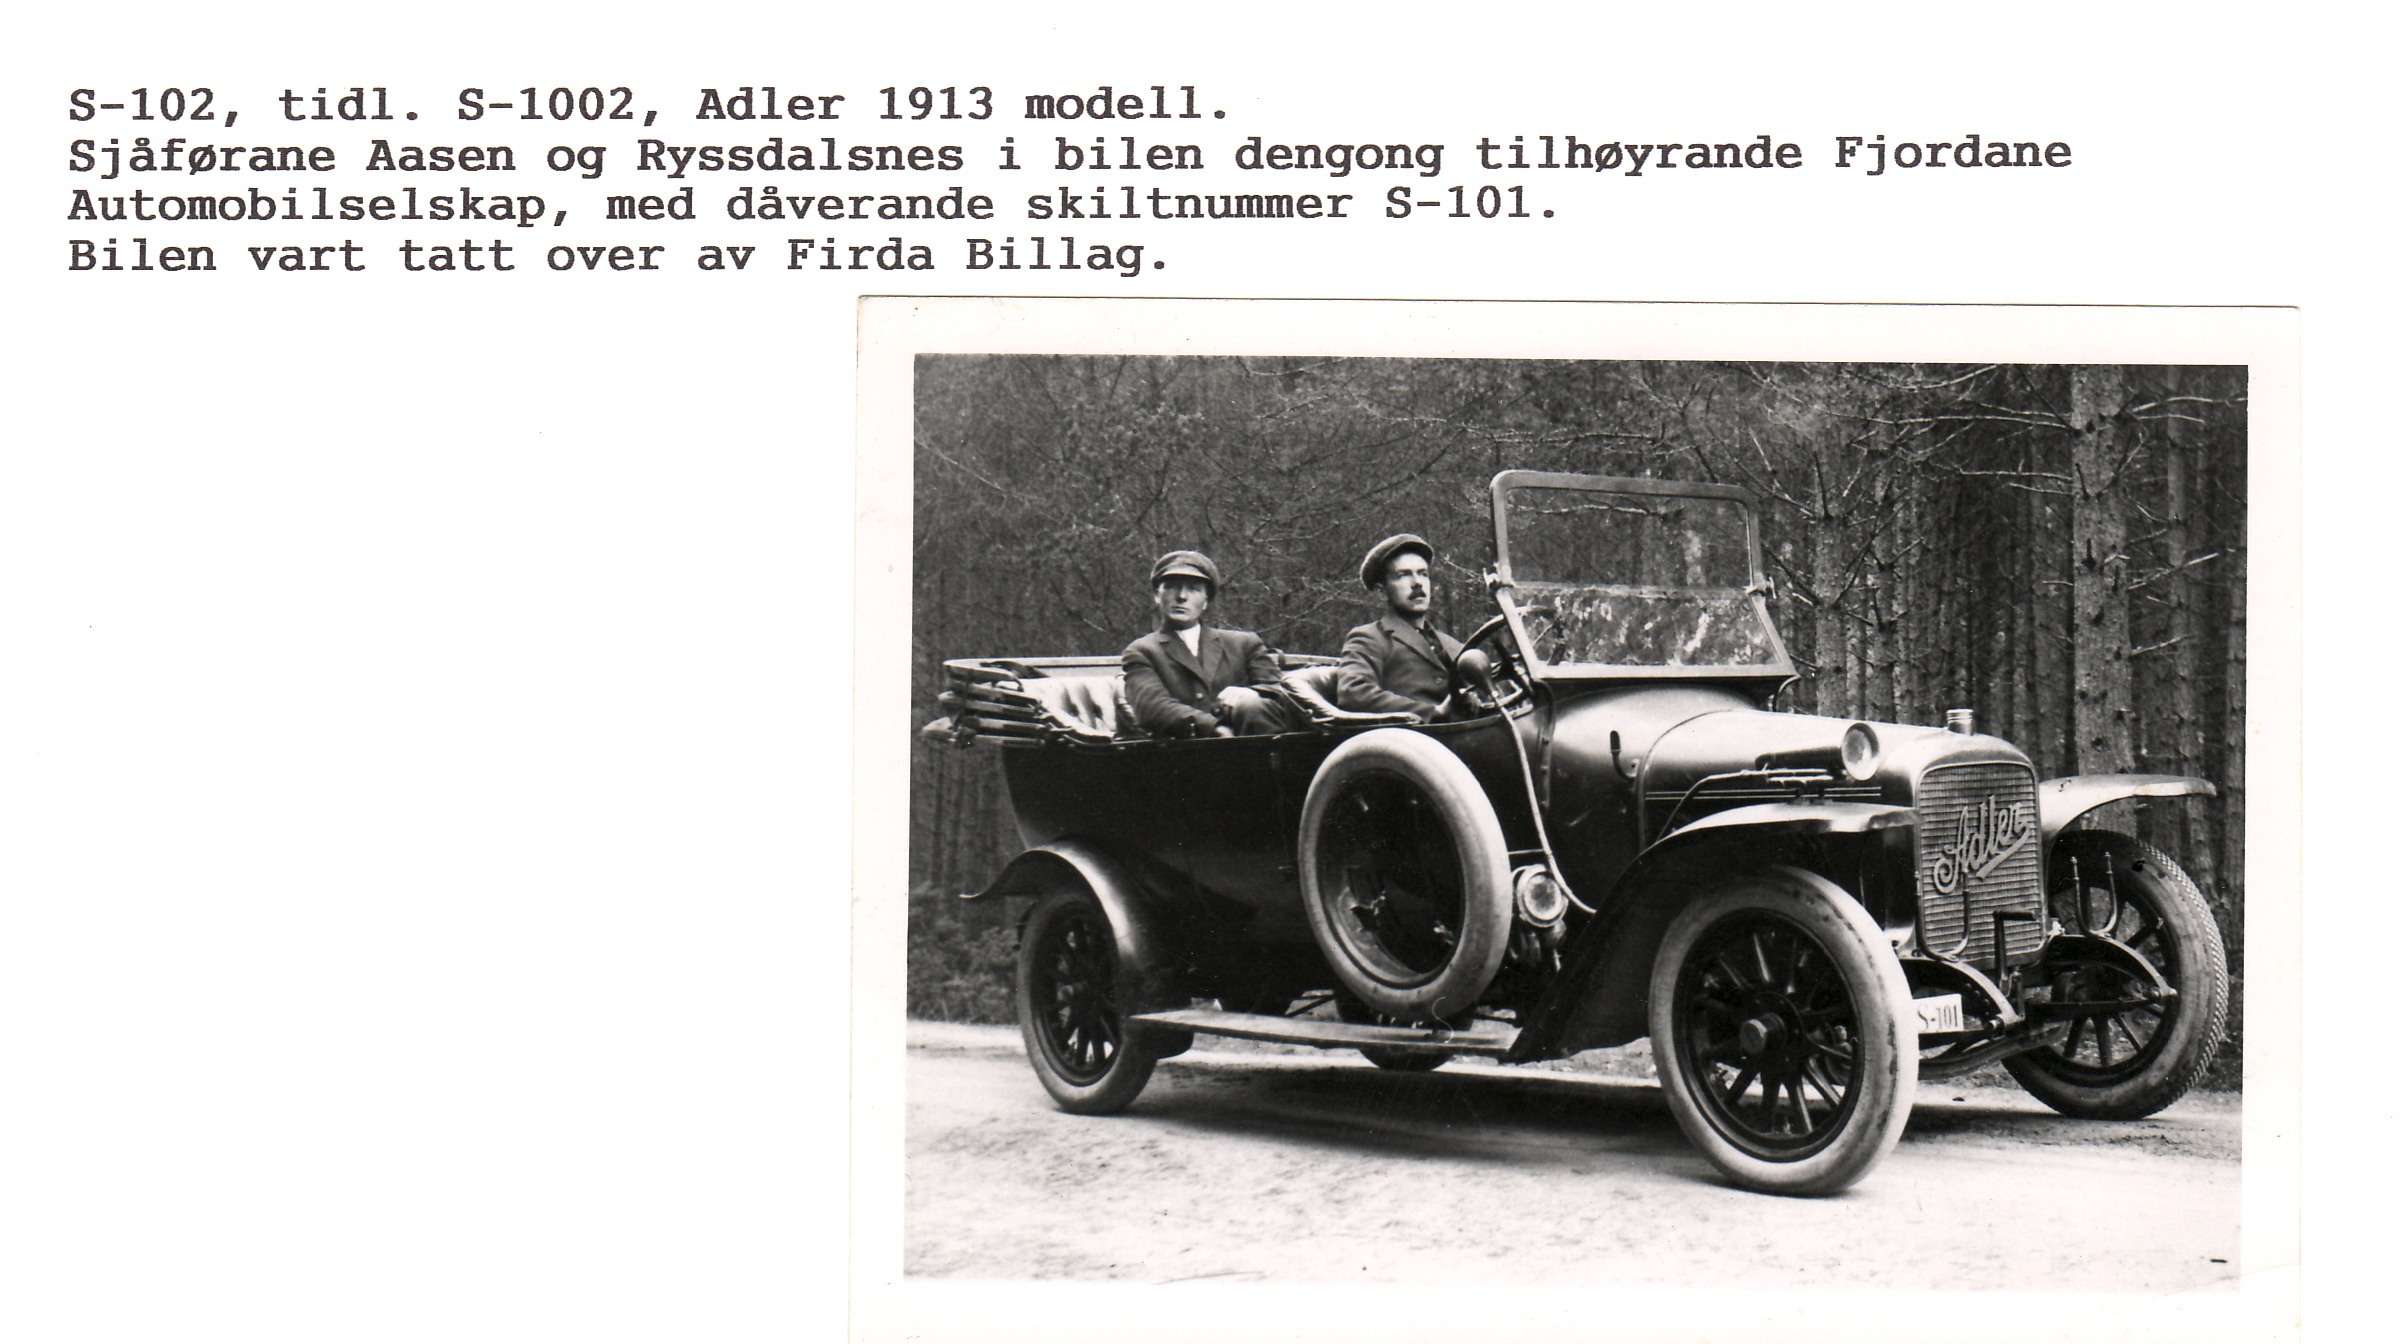 S 101 -Adler 1913 mod